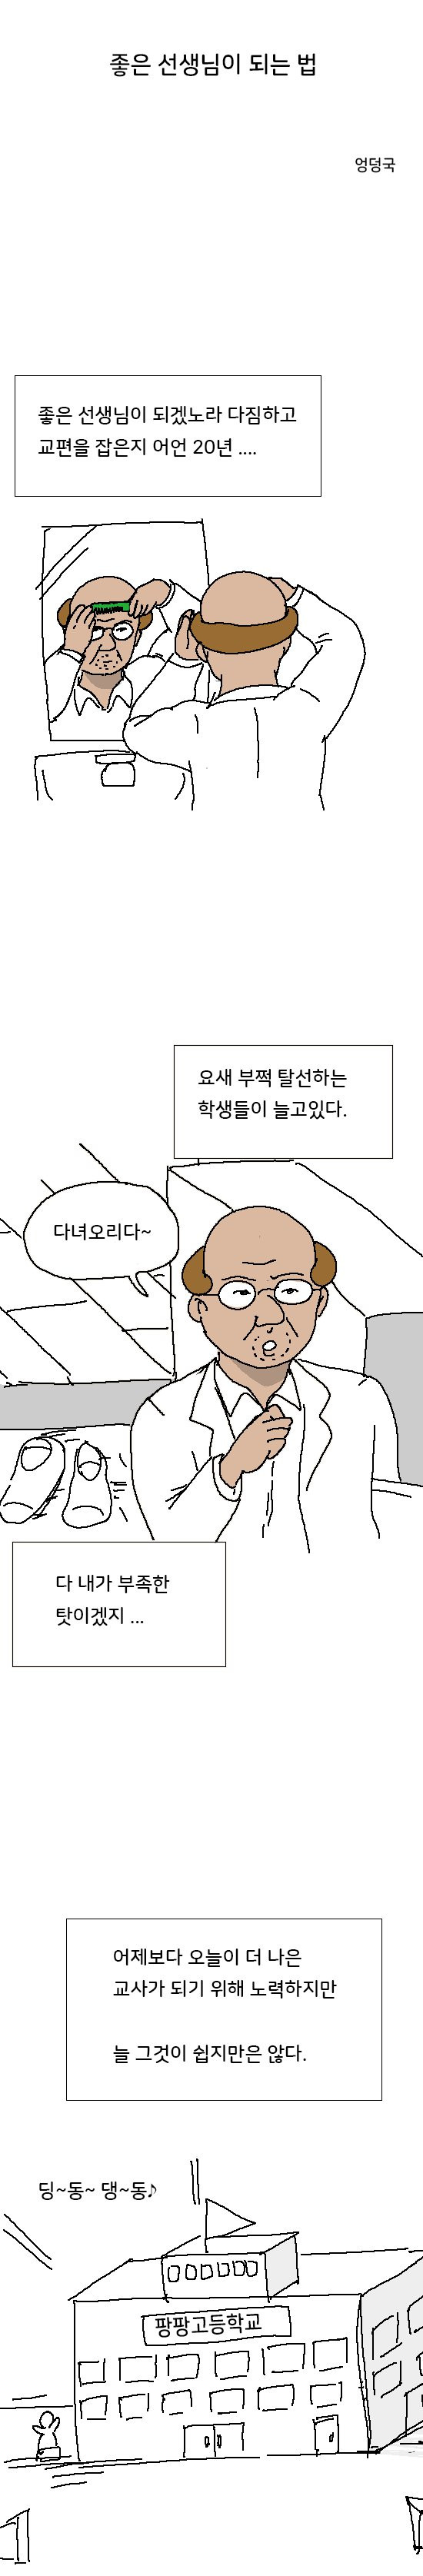 엉덩국) 좋은 선생님이 되는 법.manhwa